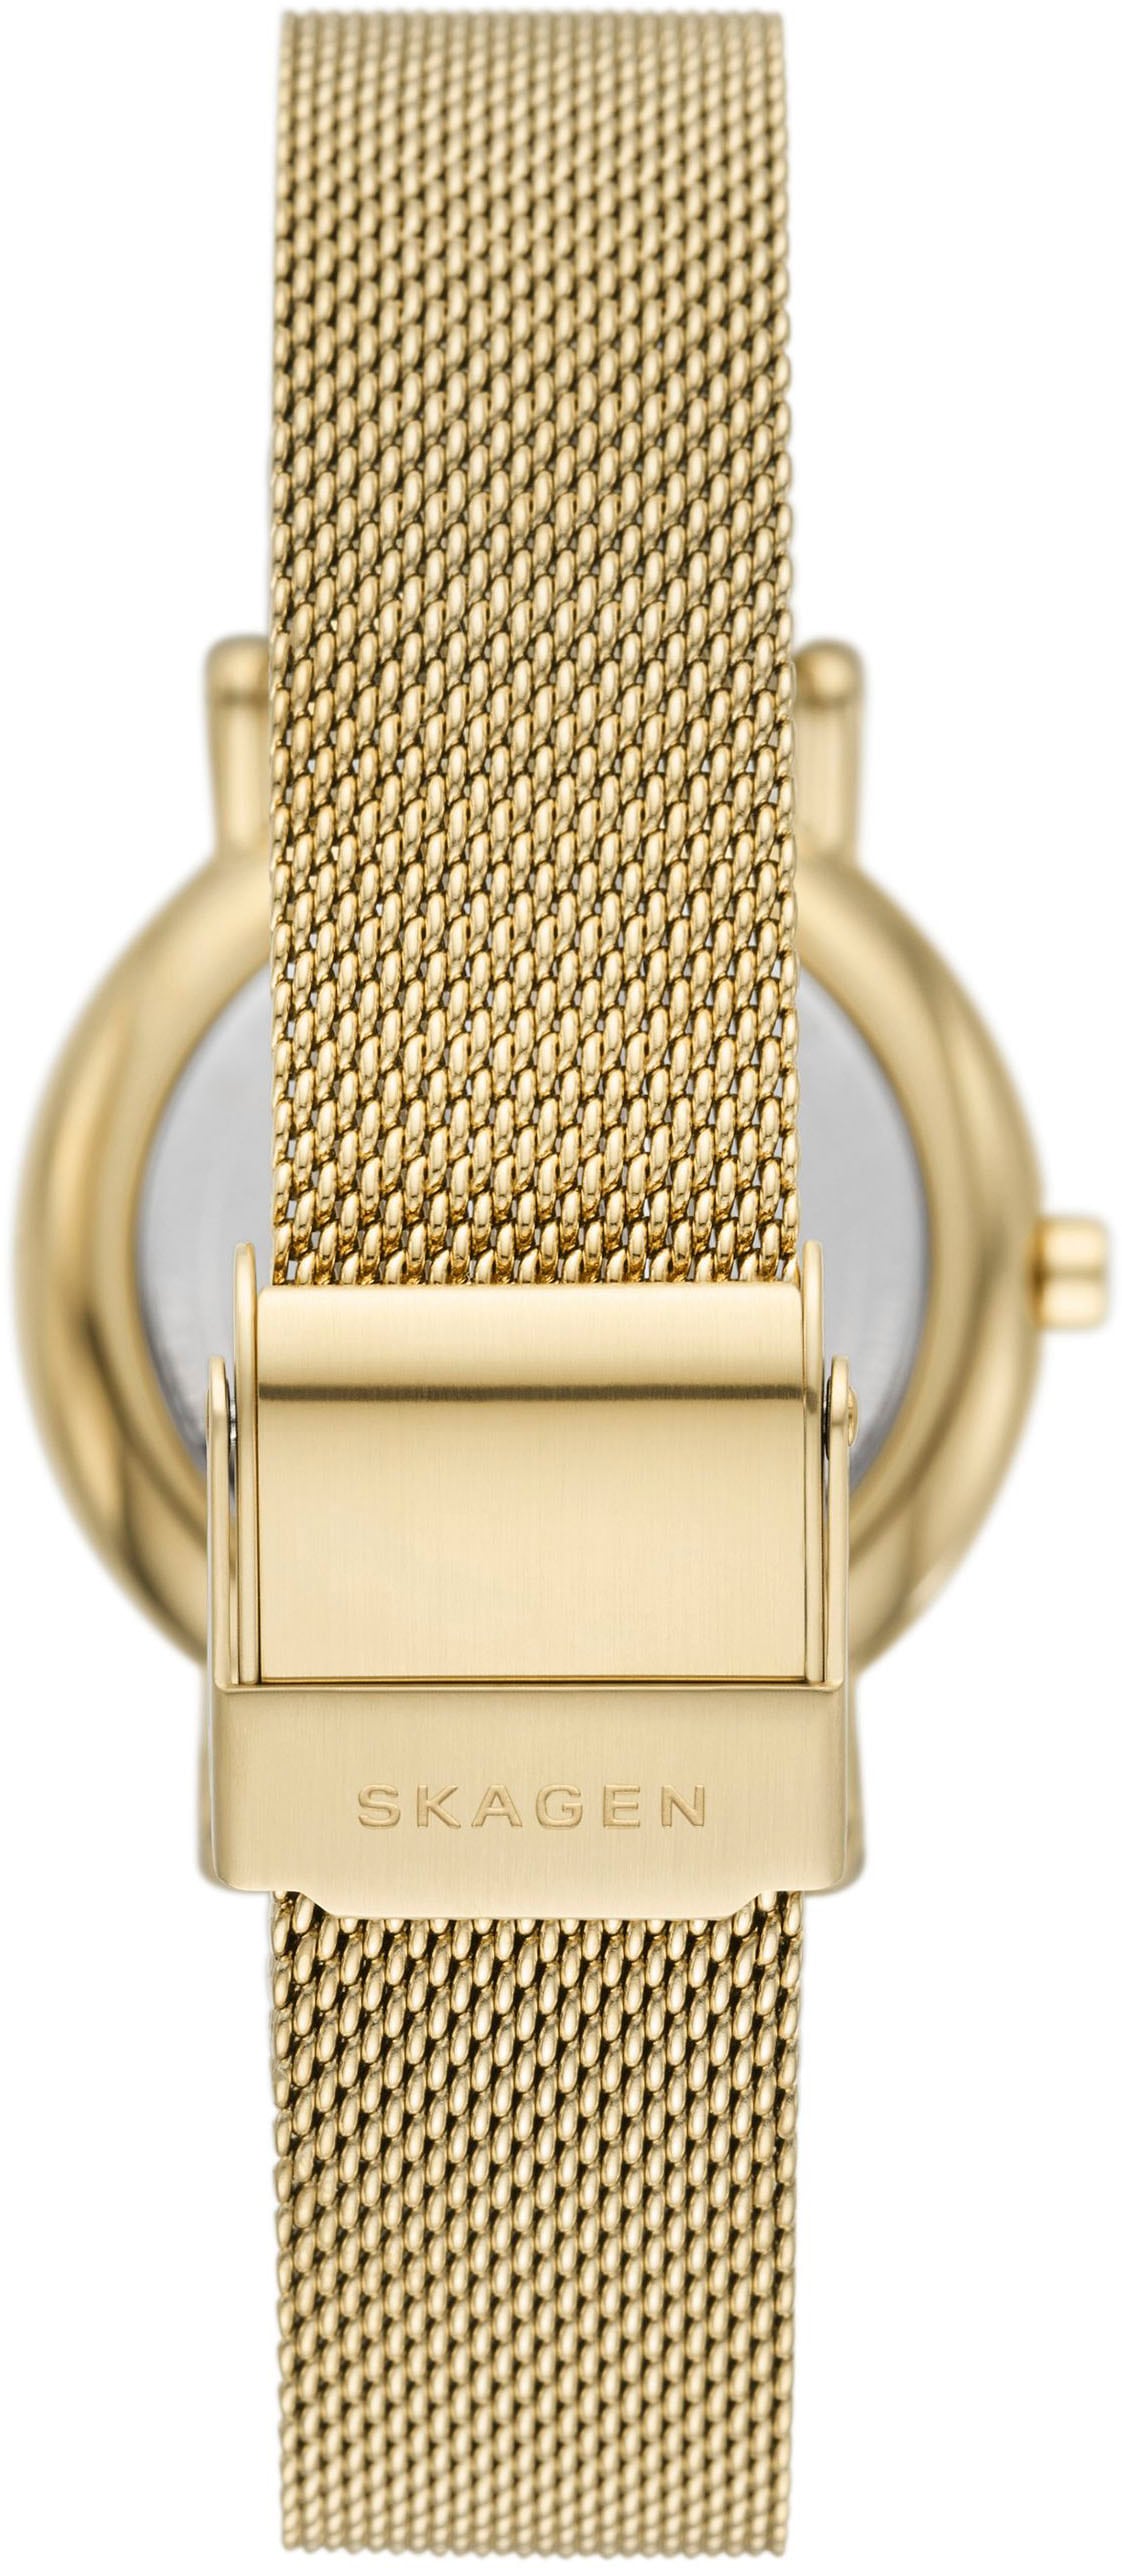 Skagen Quarzuhr »SIGNATUR LILLE, SKW3111«, Armbanduhr, Damenuhr, analog